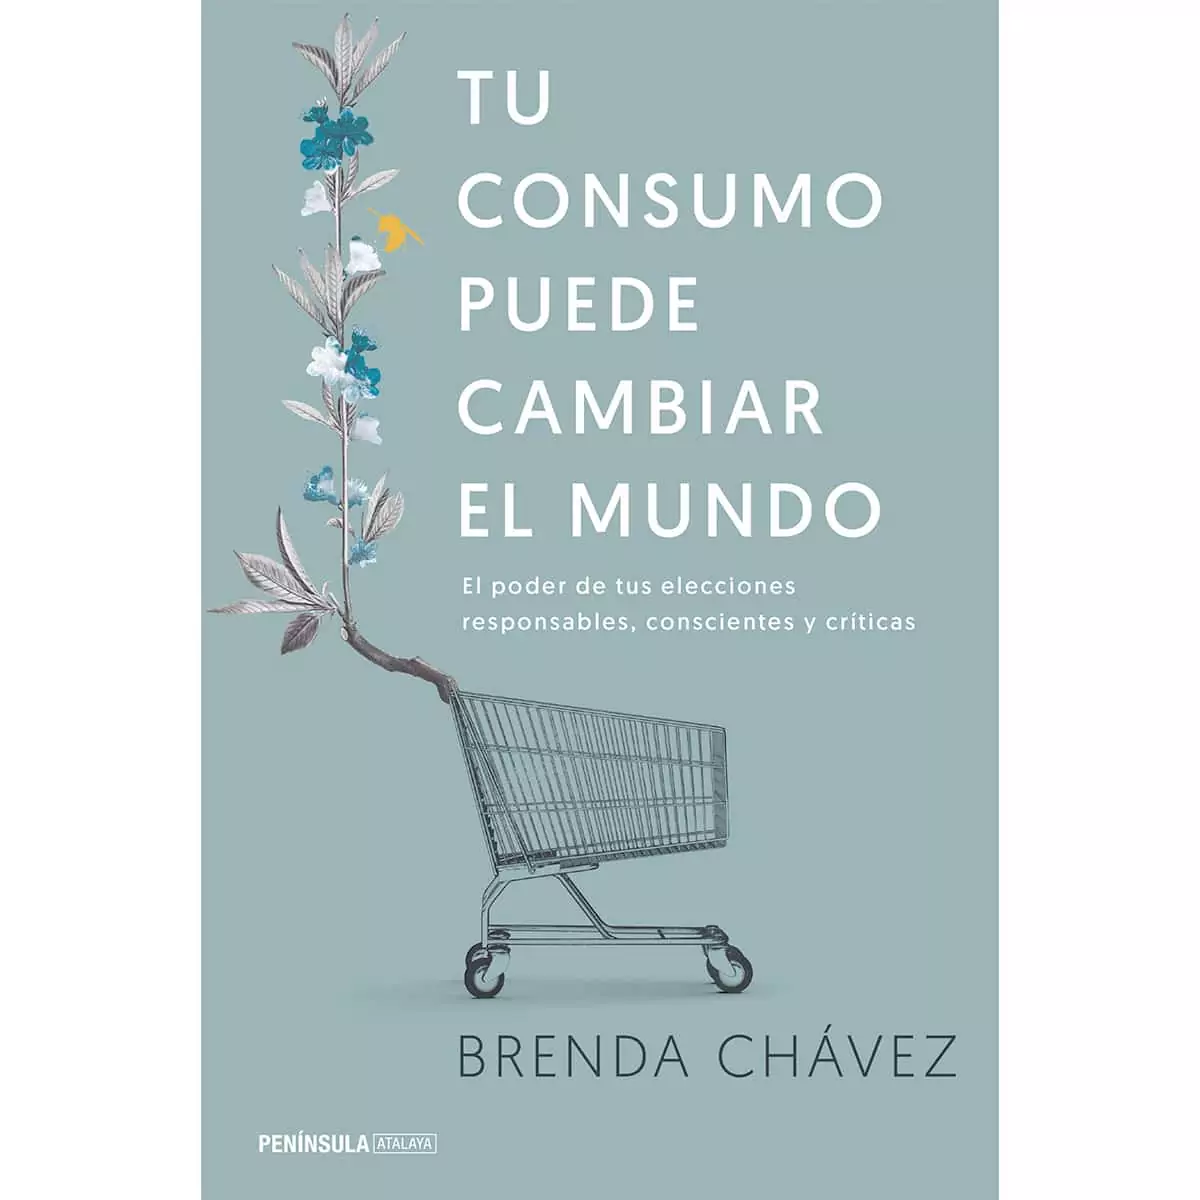 Tu consumo puede cambiar el Mundo, de Brenda Chávez